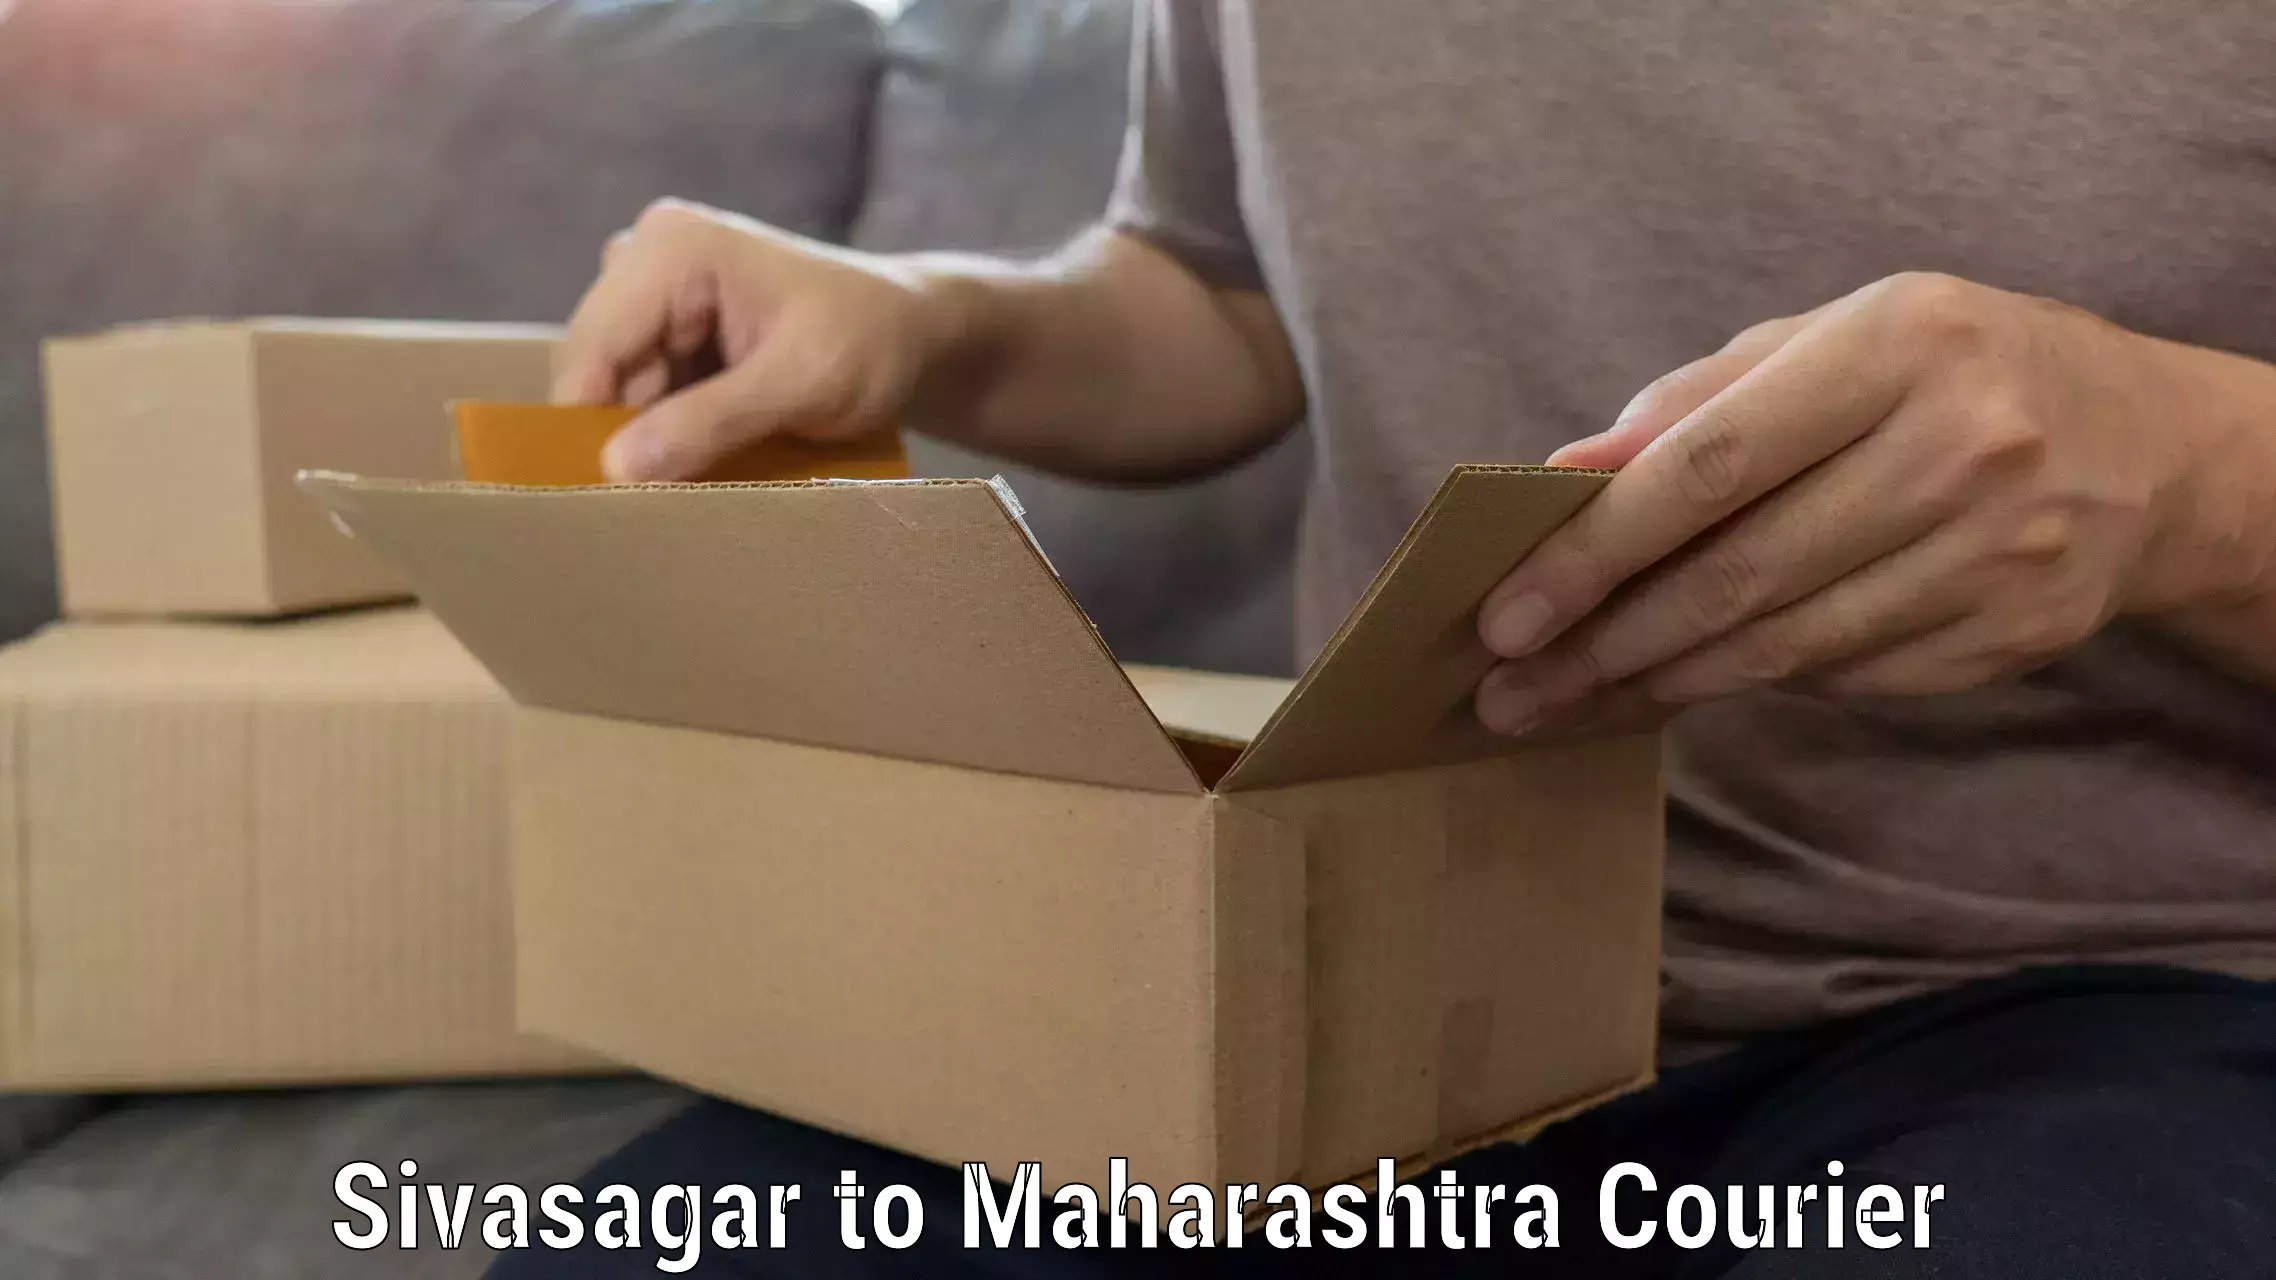 Moving and handling services Sivasagar to Maharashtra